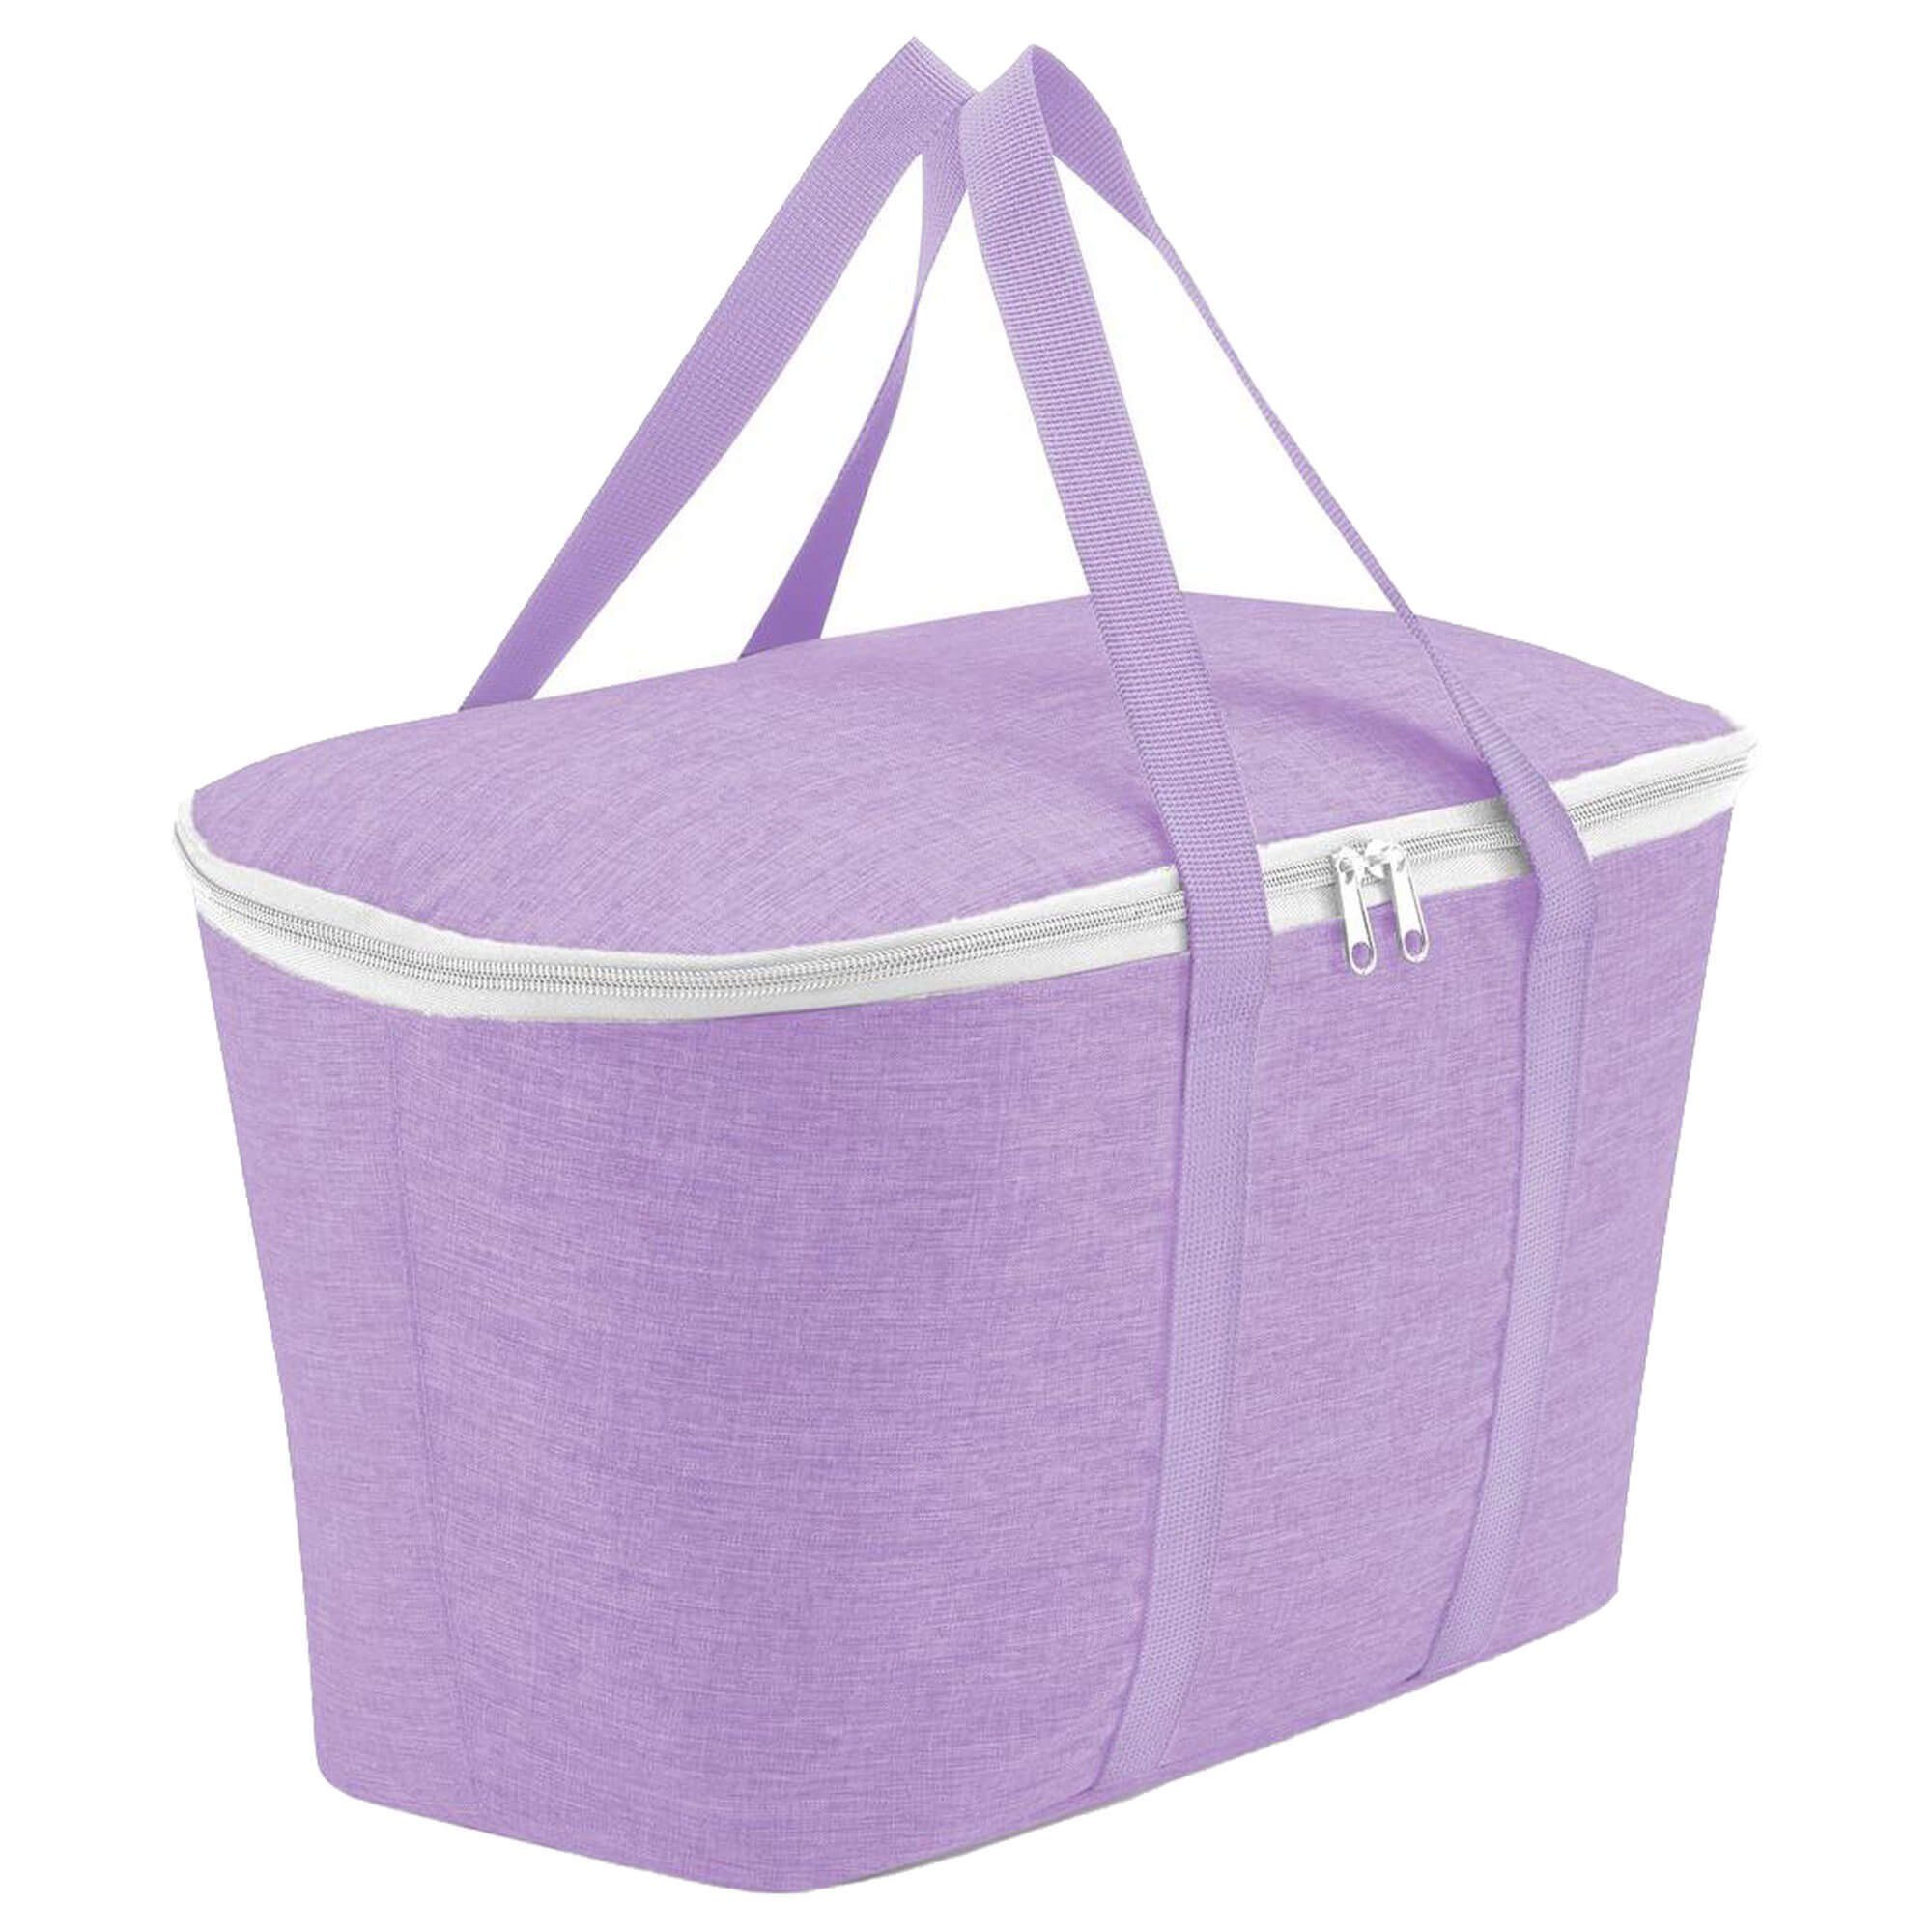 REISENTHEL® Einkaufsbeutel thermo coolerbag - Kühltasche 44.5 cm, 20 l twist violet | Einkaufsshopper